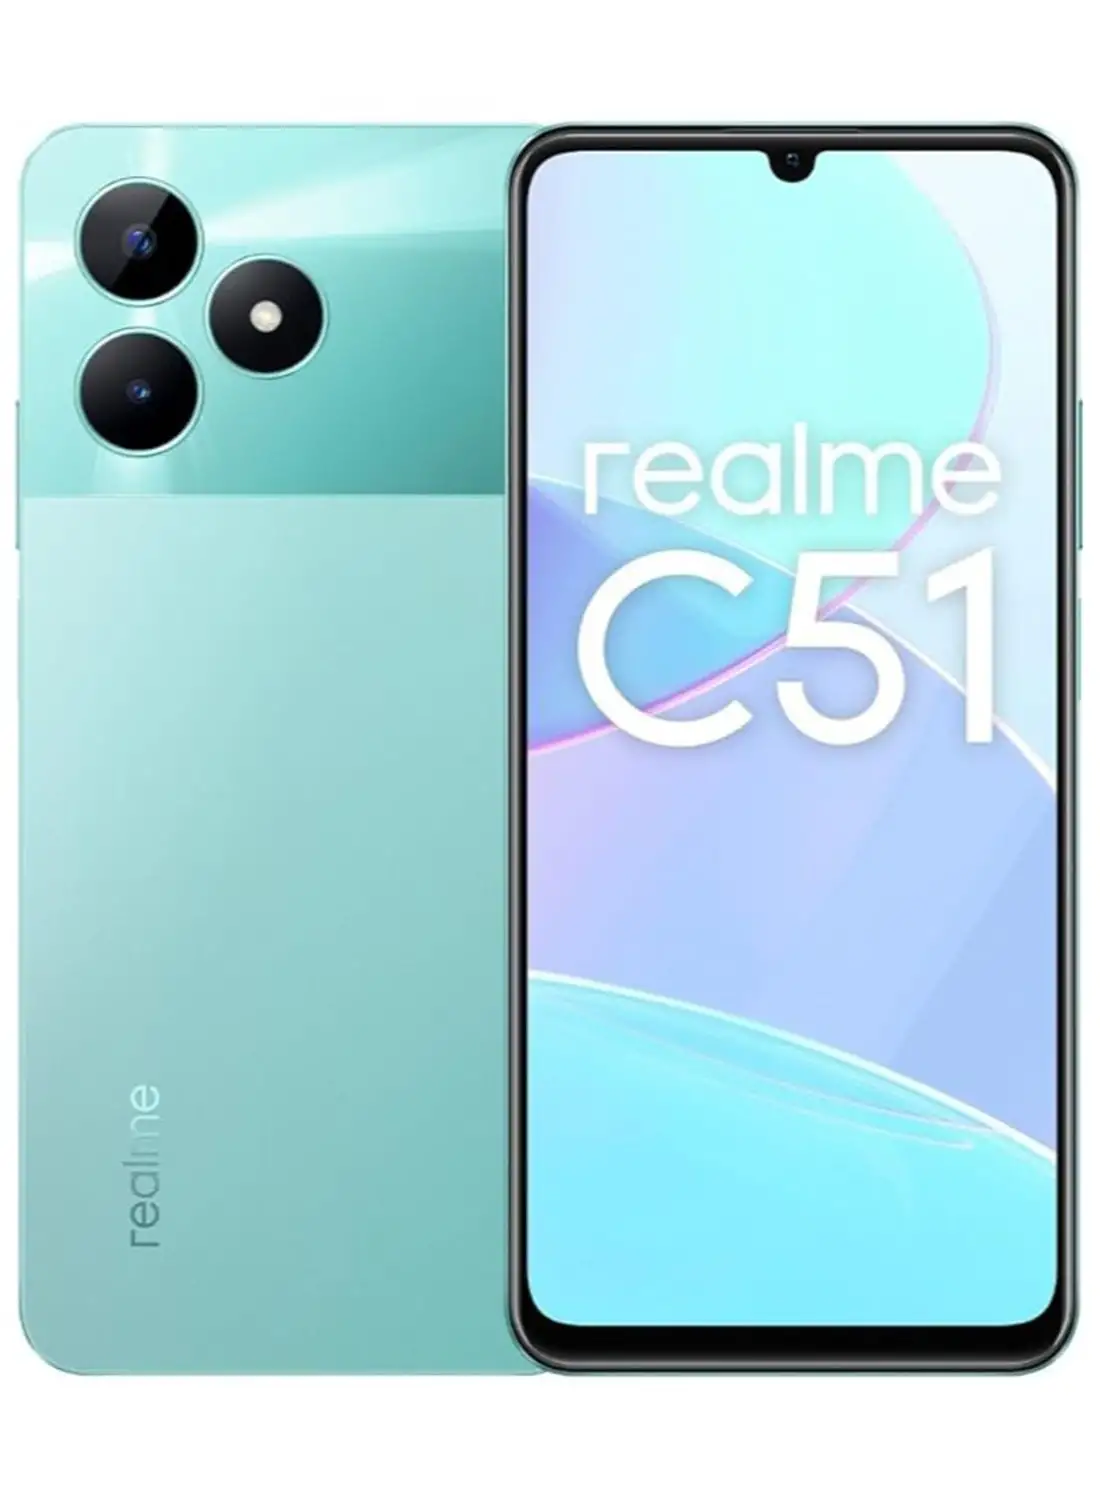 Realme C51 ثنائي الشريحة، 4 جيجابايت رام، 128 جيجابايت، أخضر نعناعي، 4G - إصدار الشرق الأوسط